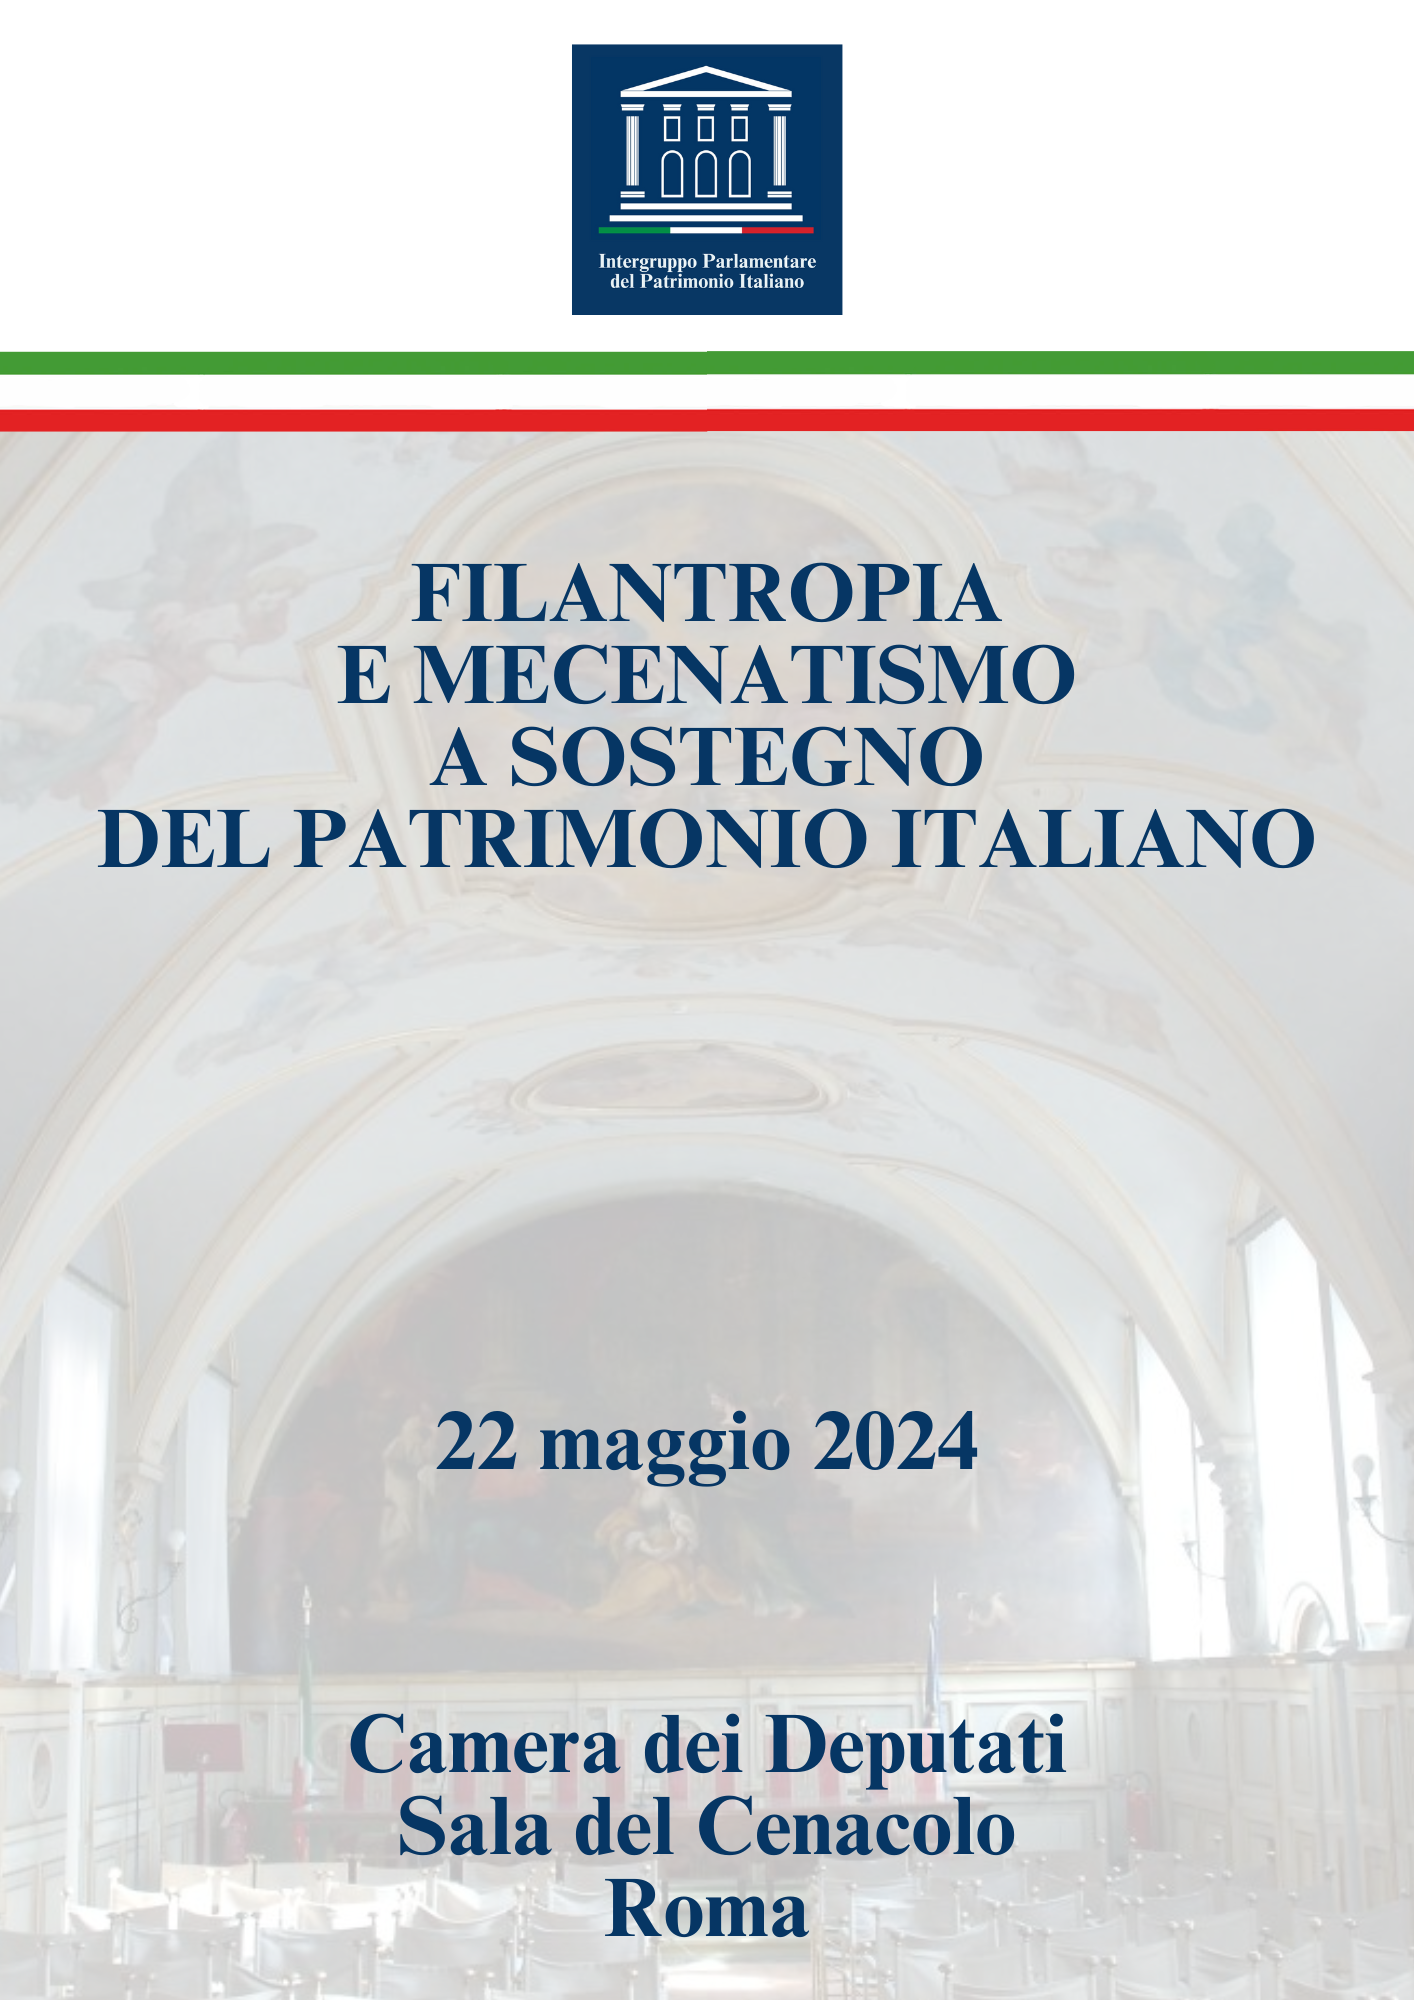 filantropia mecenatismo patrimonio camera deputati sala cenacolo roma intergruppo parlamentare patrimonio italiano